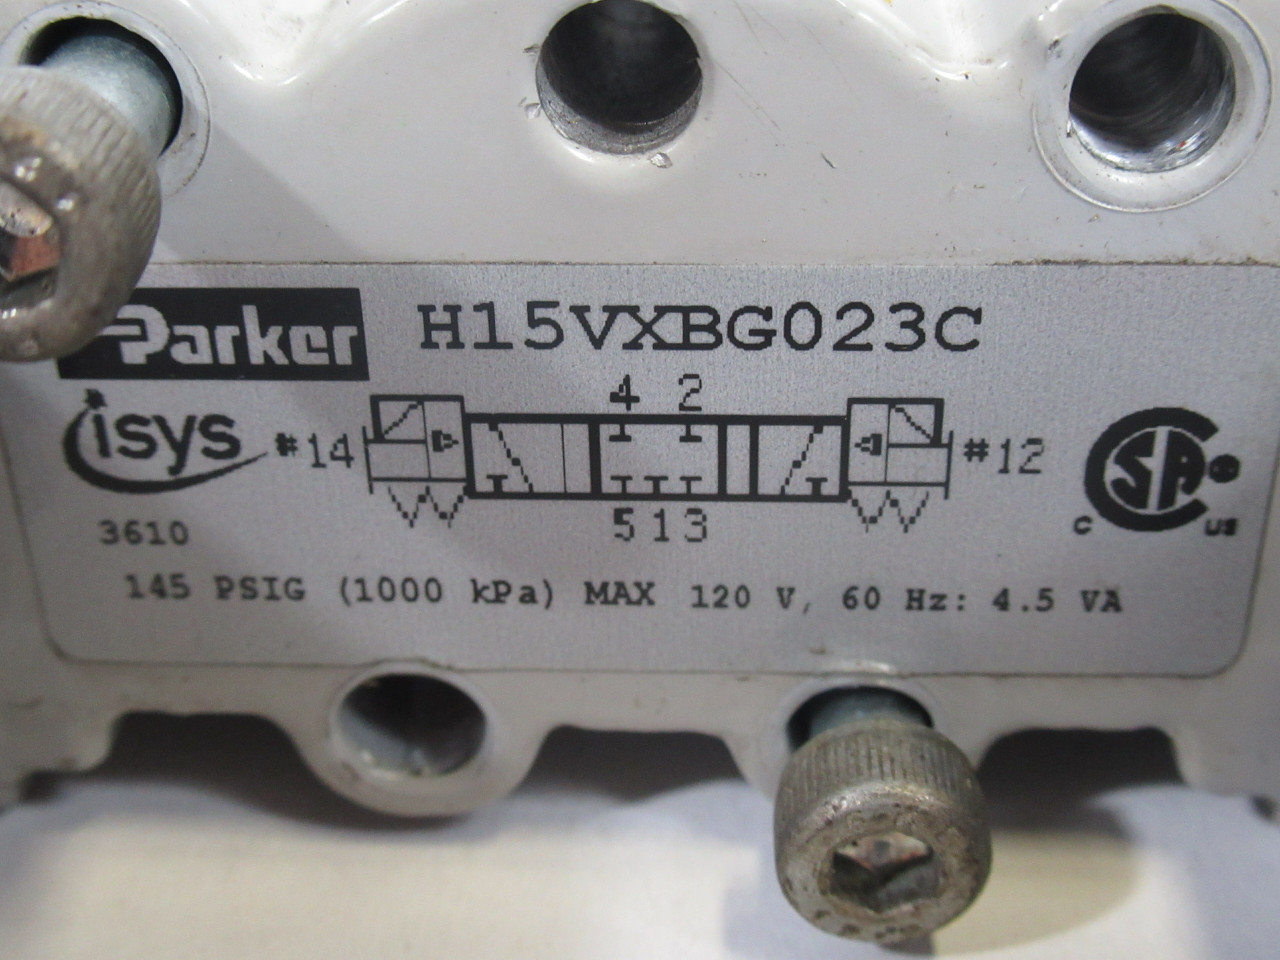 Parker H15VXBG023C 4/3 Solenoid Valve 145 psig *Missing Connector Tip* USED